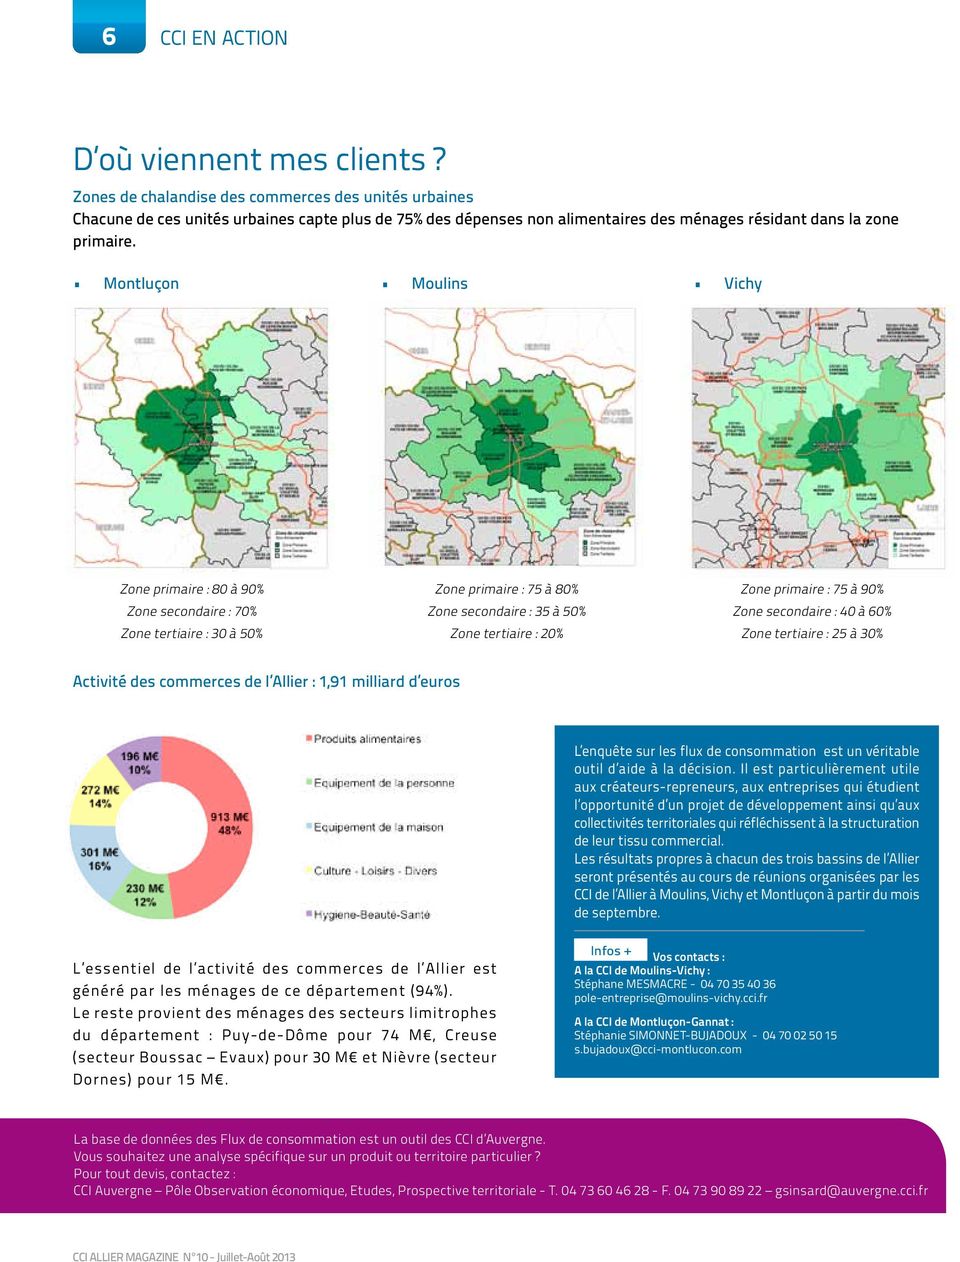 Montluçon Moulins Vichy Zone primaire : 80 à 90% Zone secondaire : 70% Zone tertiaire : 30 à 50% Zone primaire : 75 à 80% Zone secondaire : 35 à 50% Zone tertiaire : 20% Zone primaire : 75 à 90% Zone